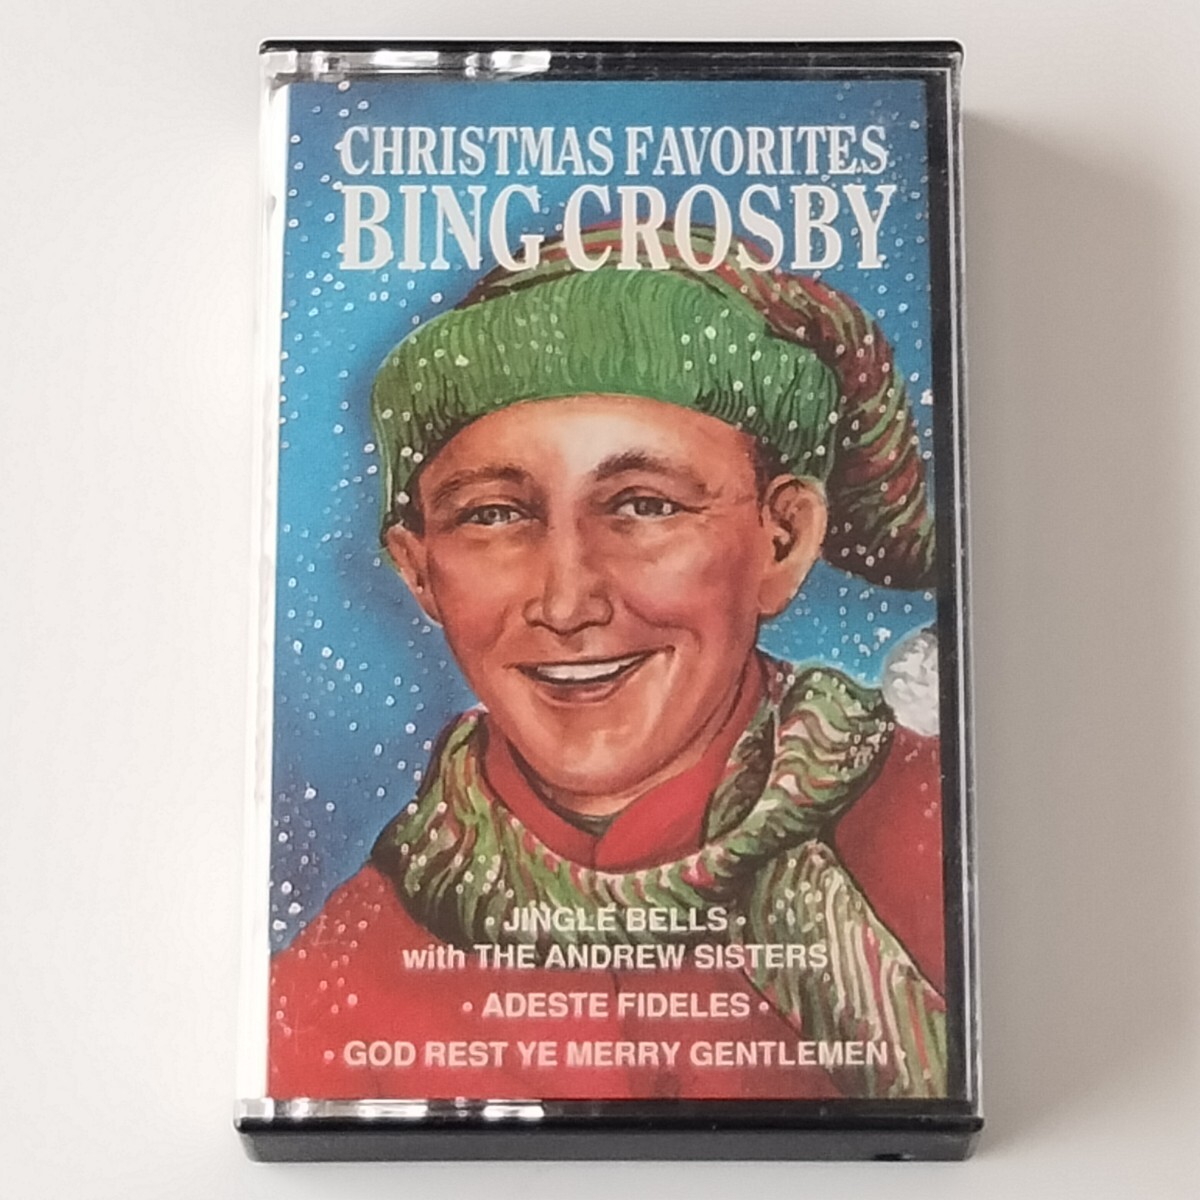 【輸入版カセットテープ】BING CROSBY/CHRISTMAS FAVORITES(HANC-15059)ビング・クロスビー/クリスマス・ソング集/ジングルベル_画像1